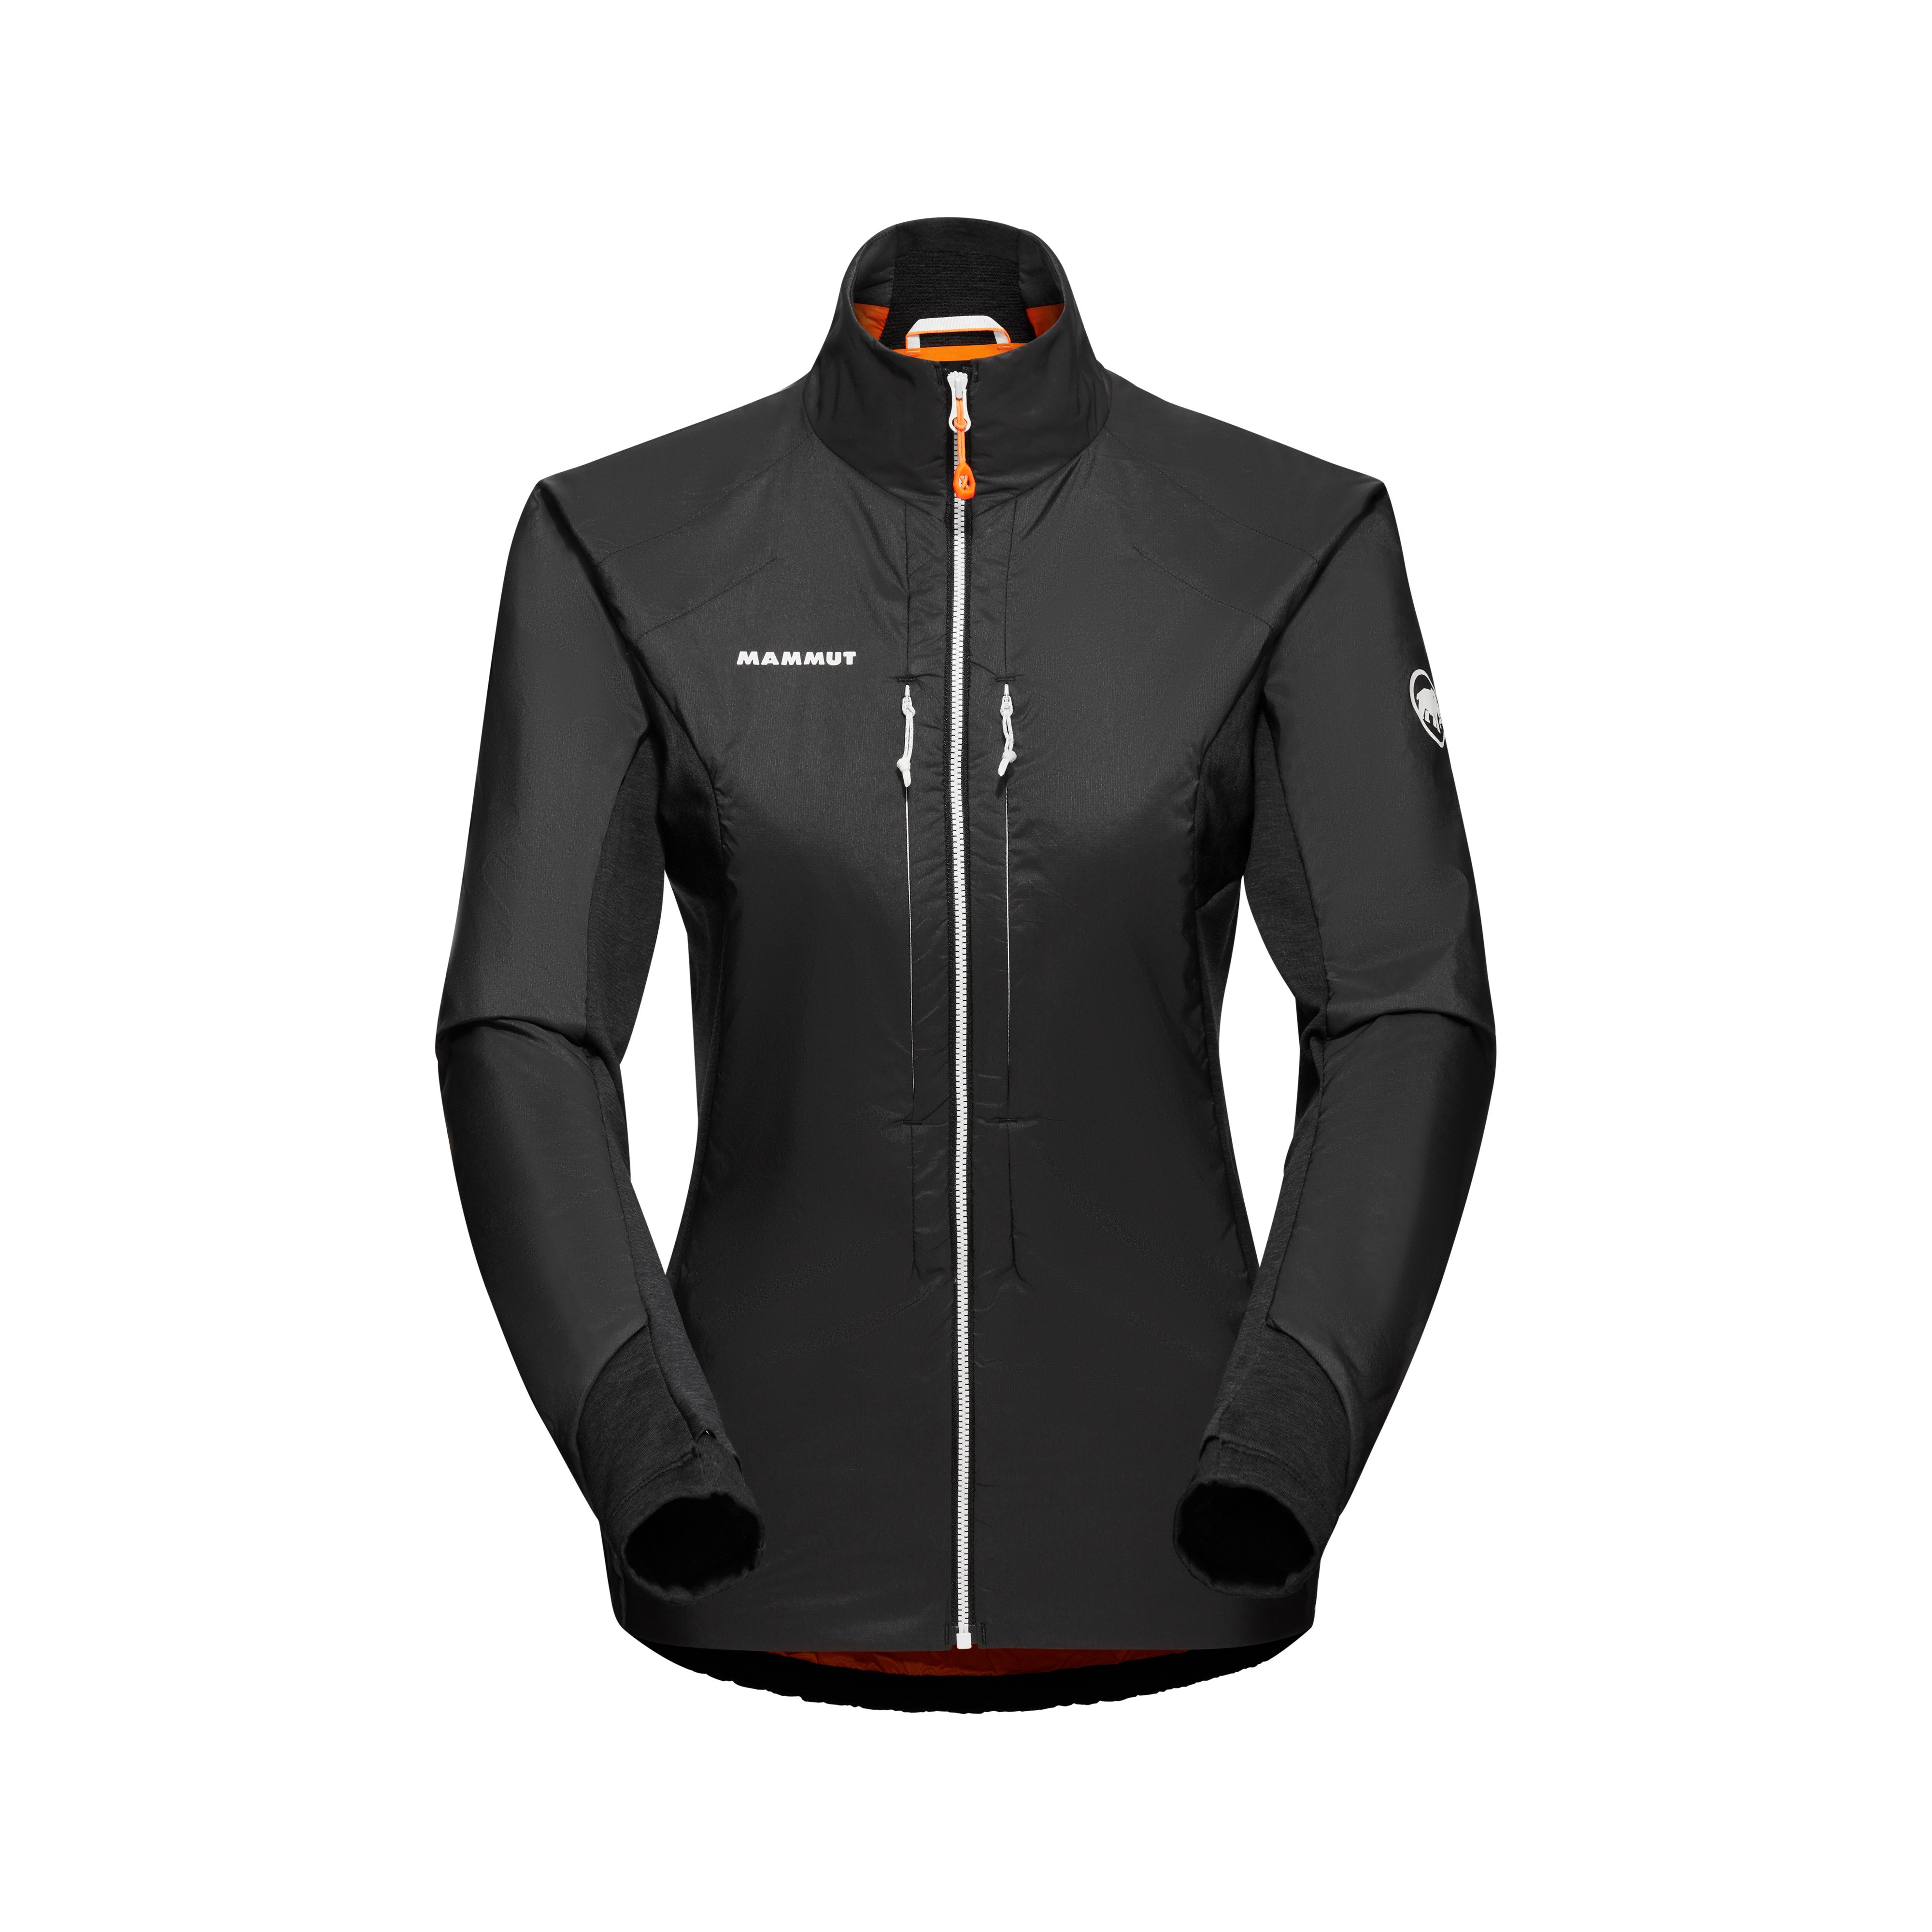 Eigerjoch IN Hybrid Jacket Women - black, S product image